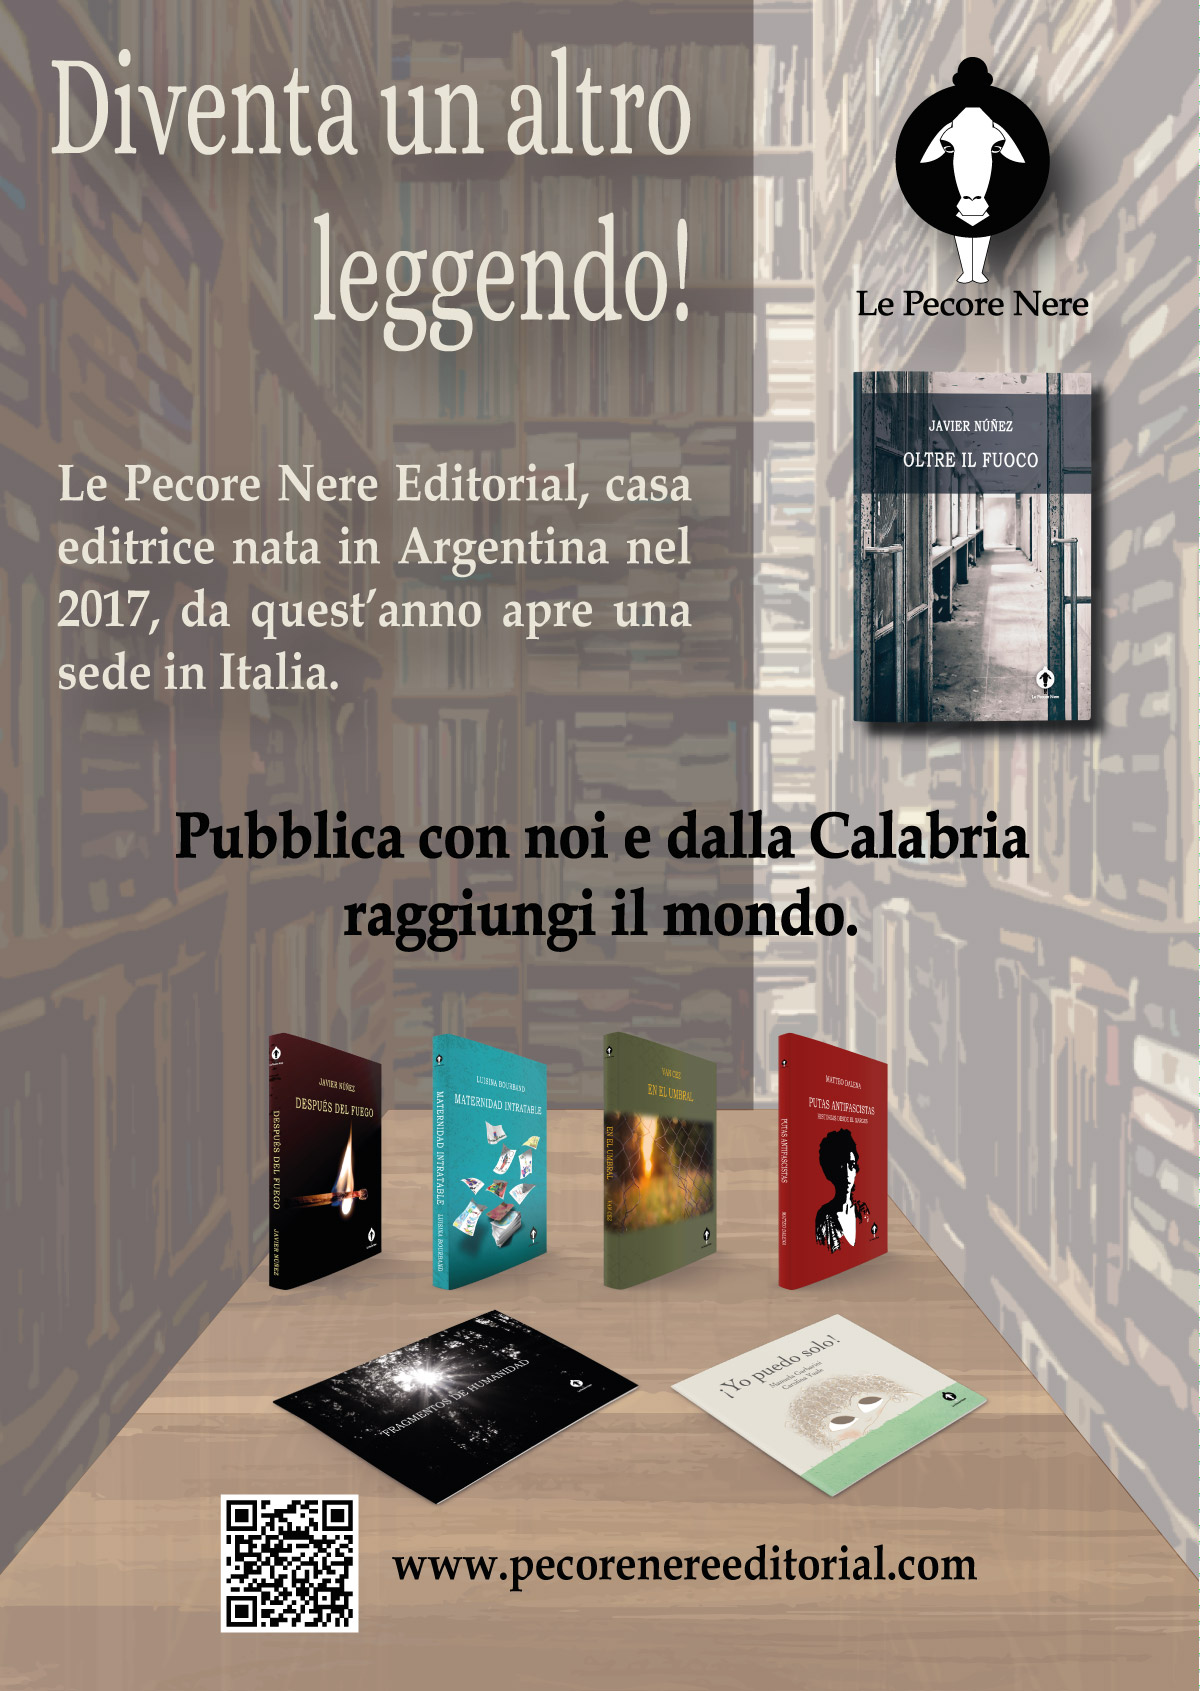 Pecore nere editorial, argentina, italia, Calabria, libri, editoria, romanzi